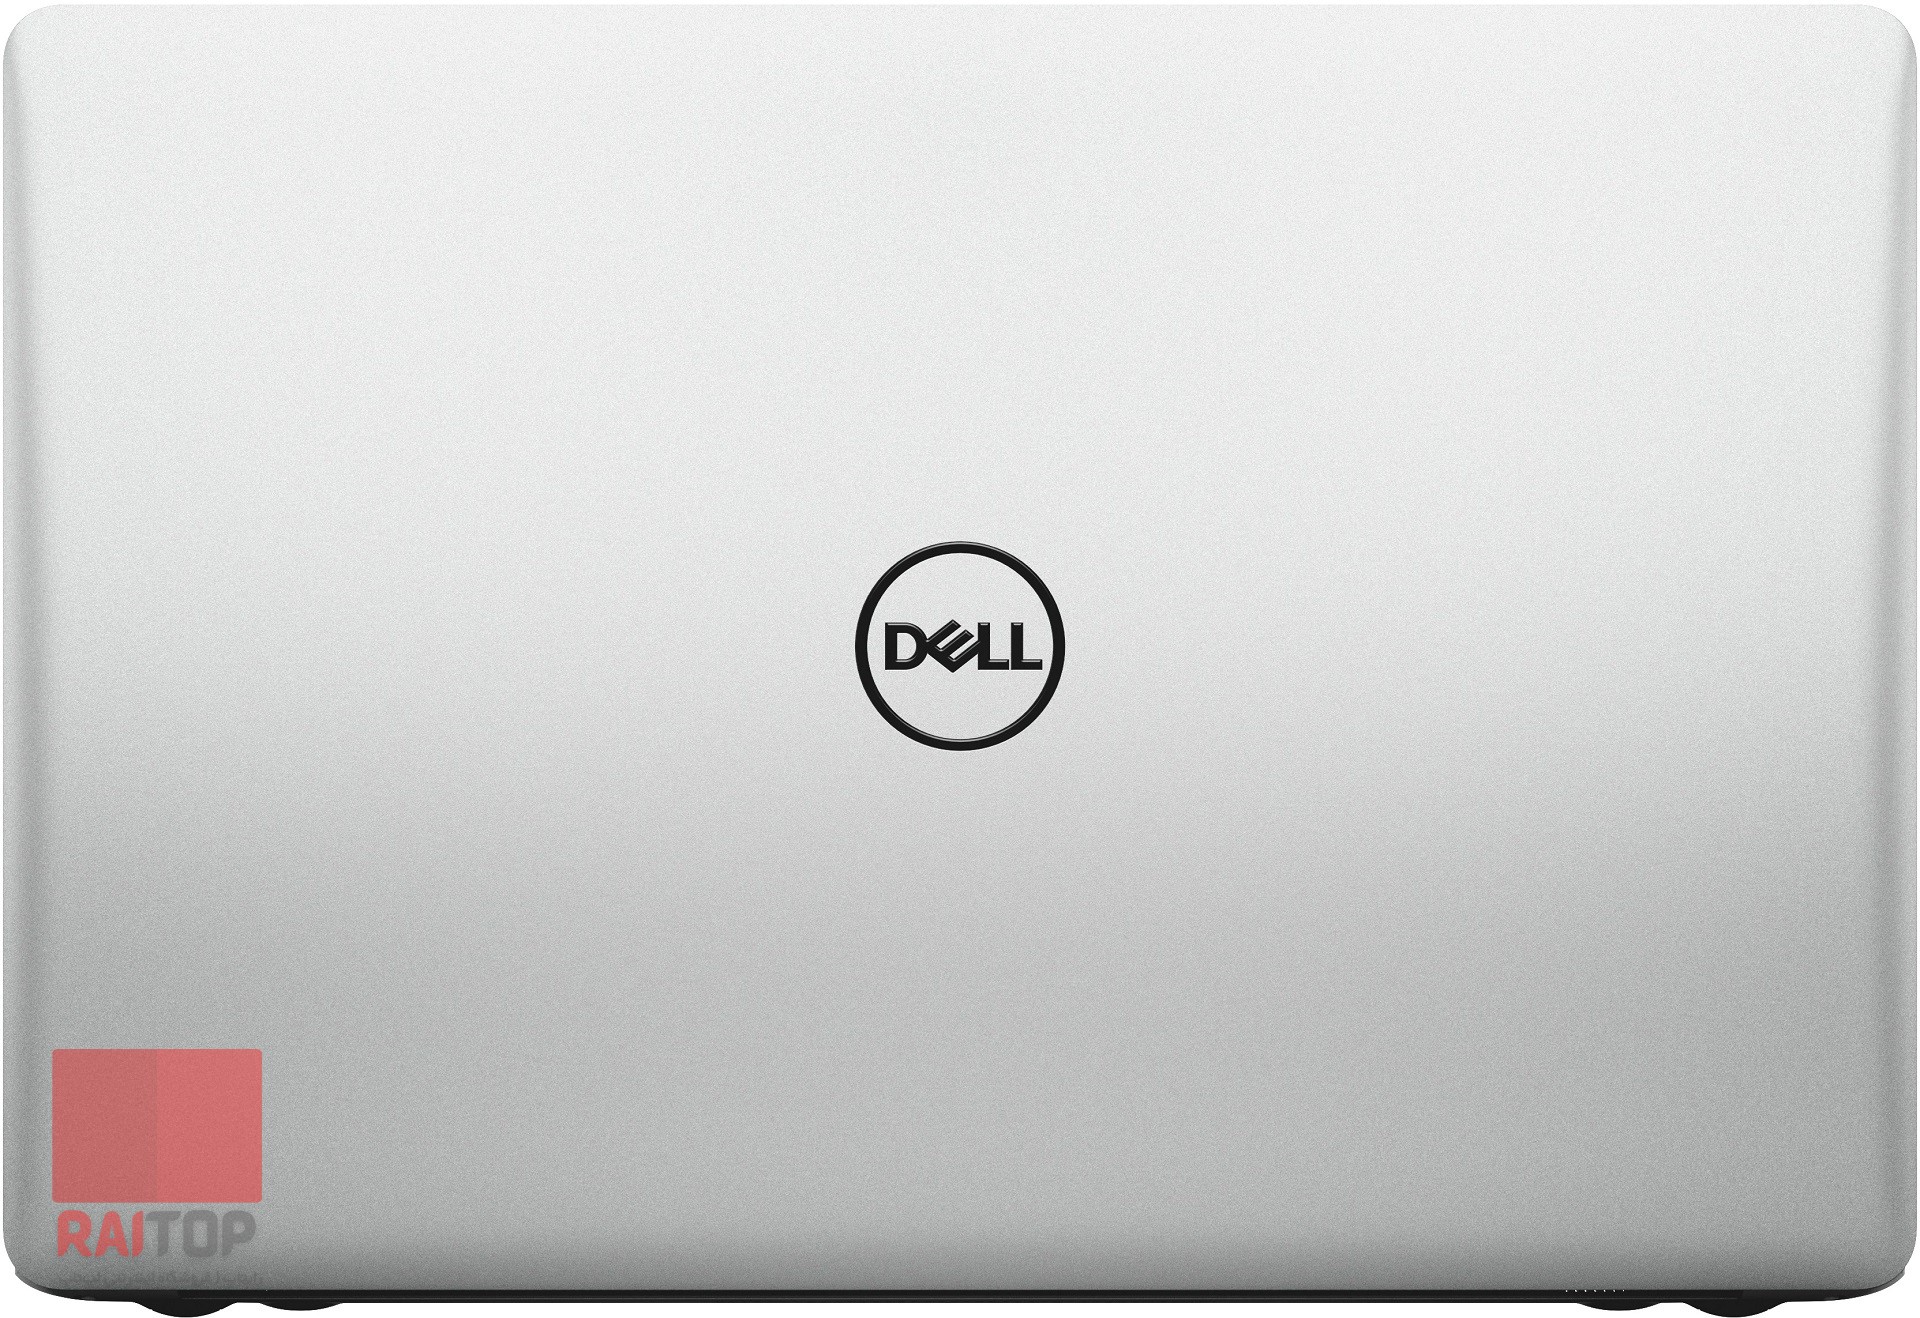 لپ تاپ 17 اینچی Dell مدل Inspiron 5770 قاب پشت